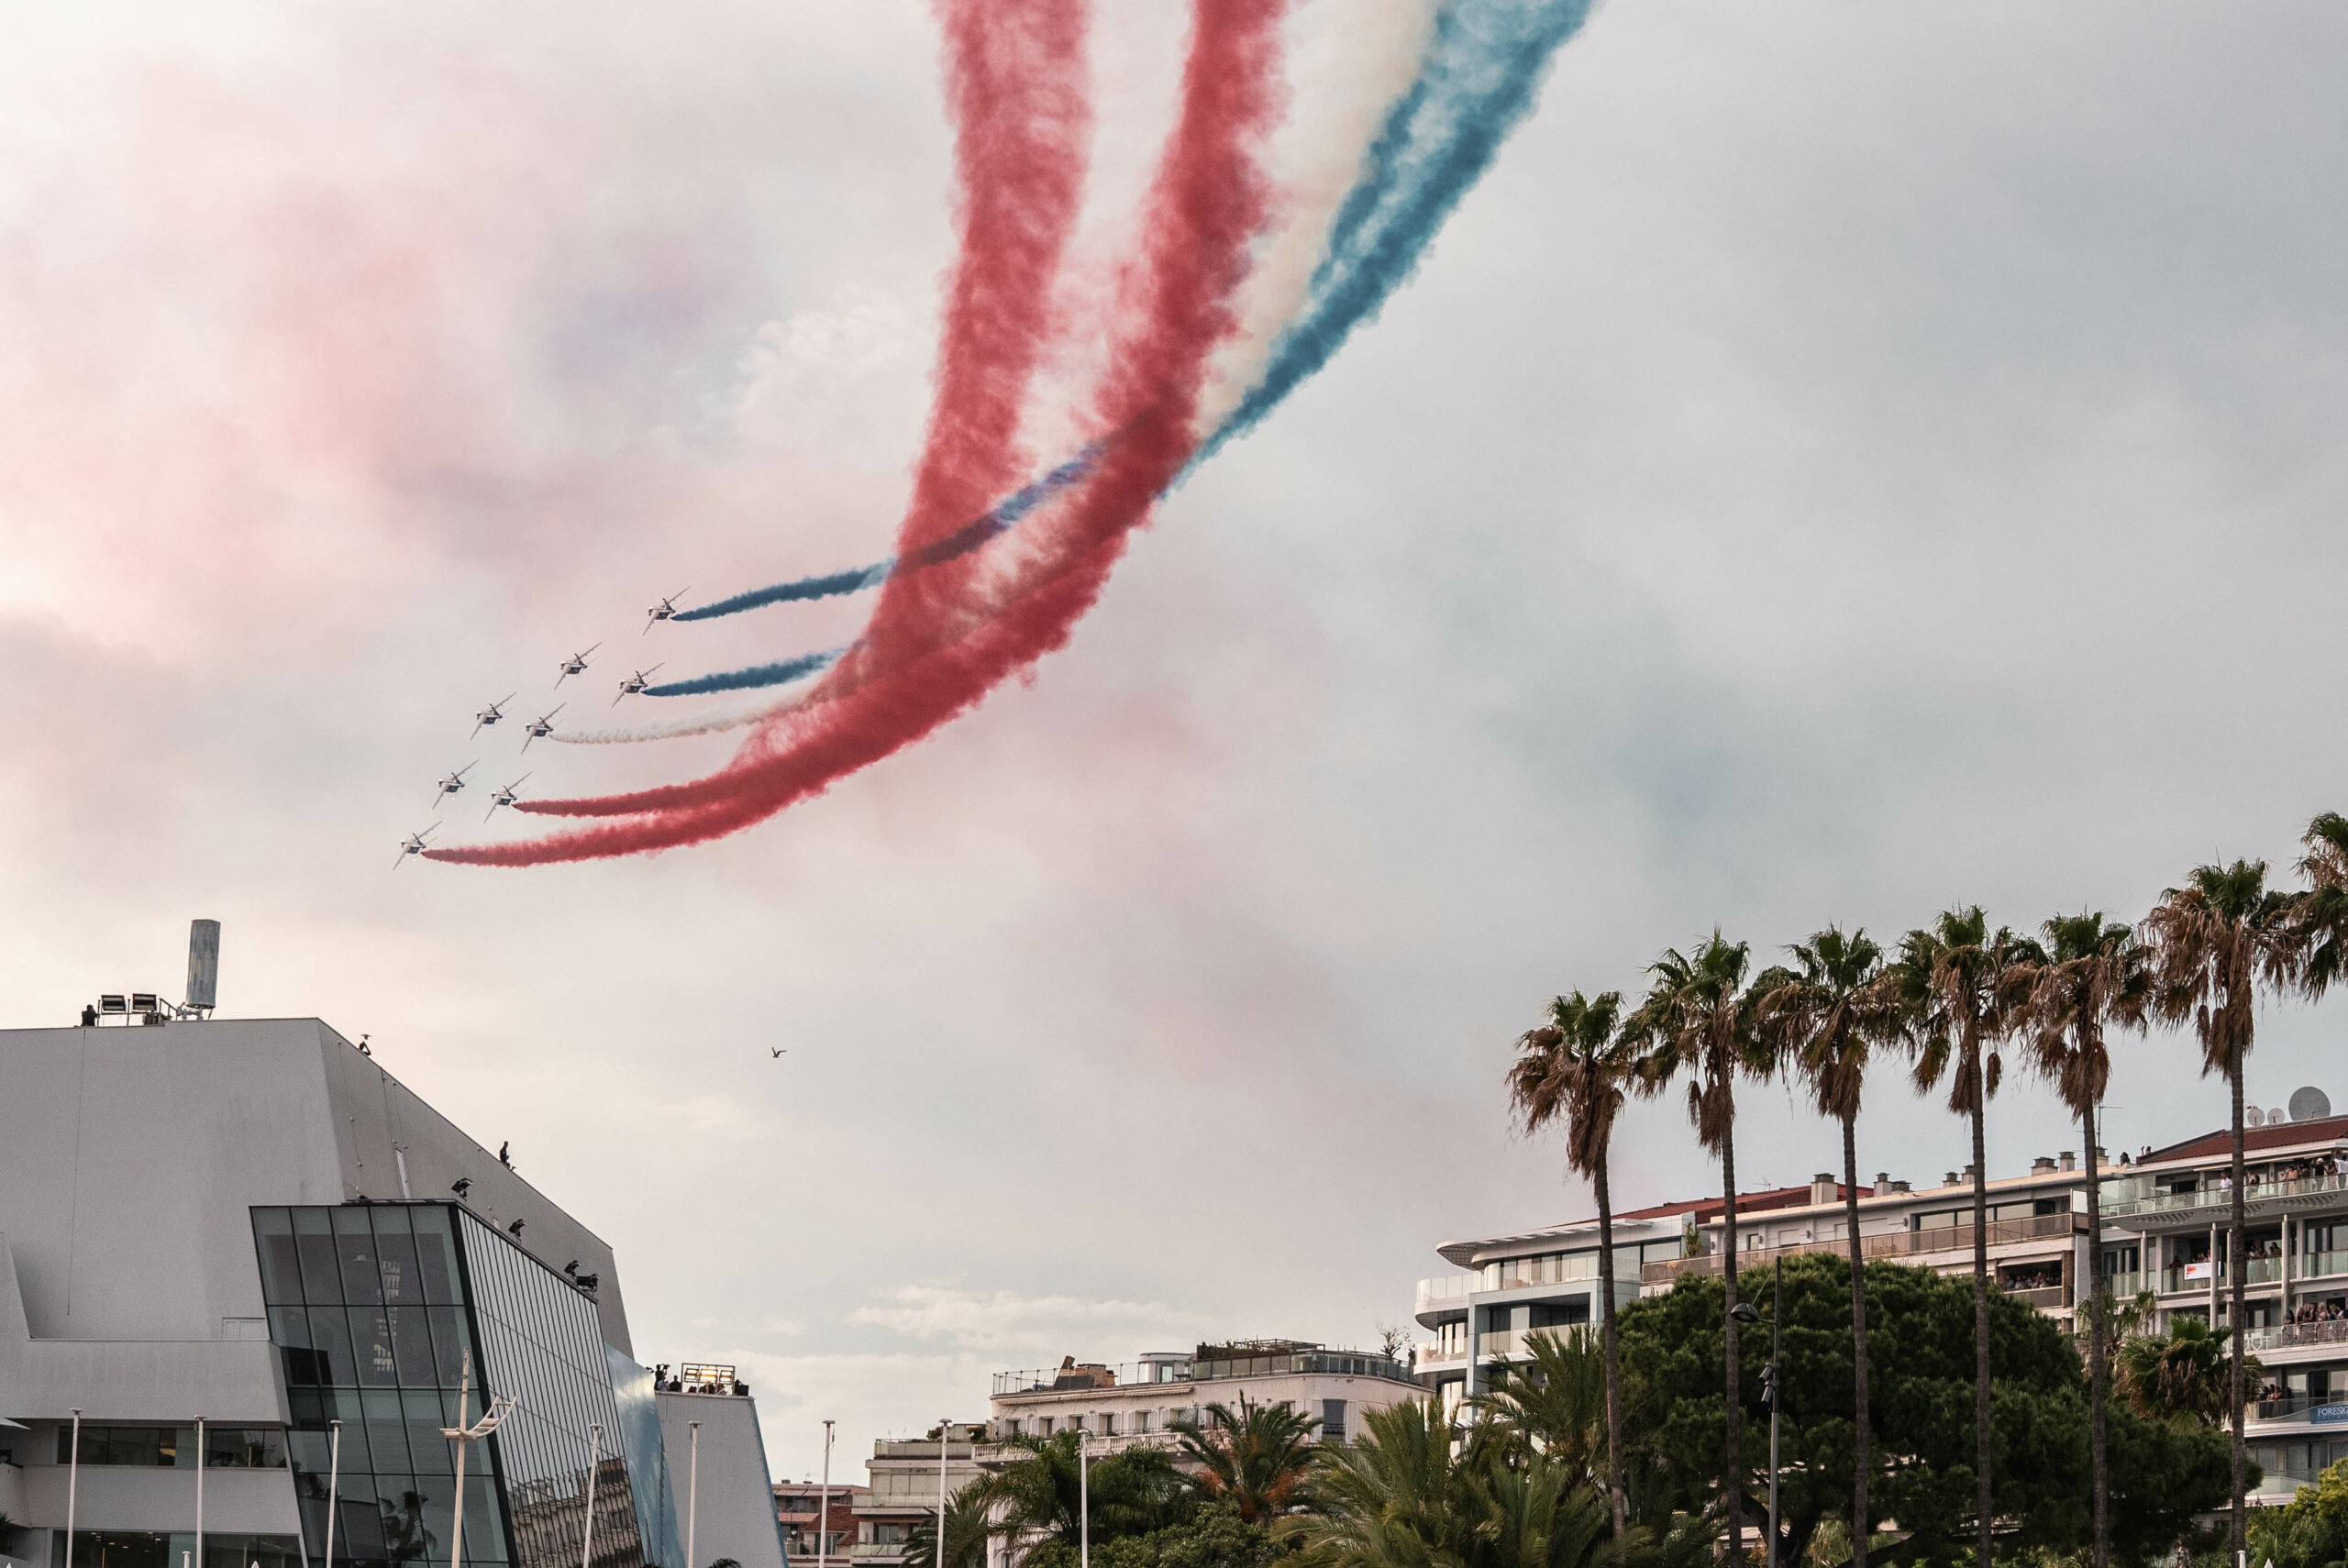 Patrouille de France qui survole les marches du Festivals de Cannes 2022